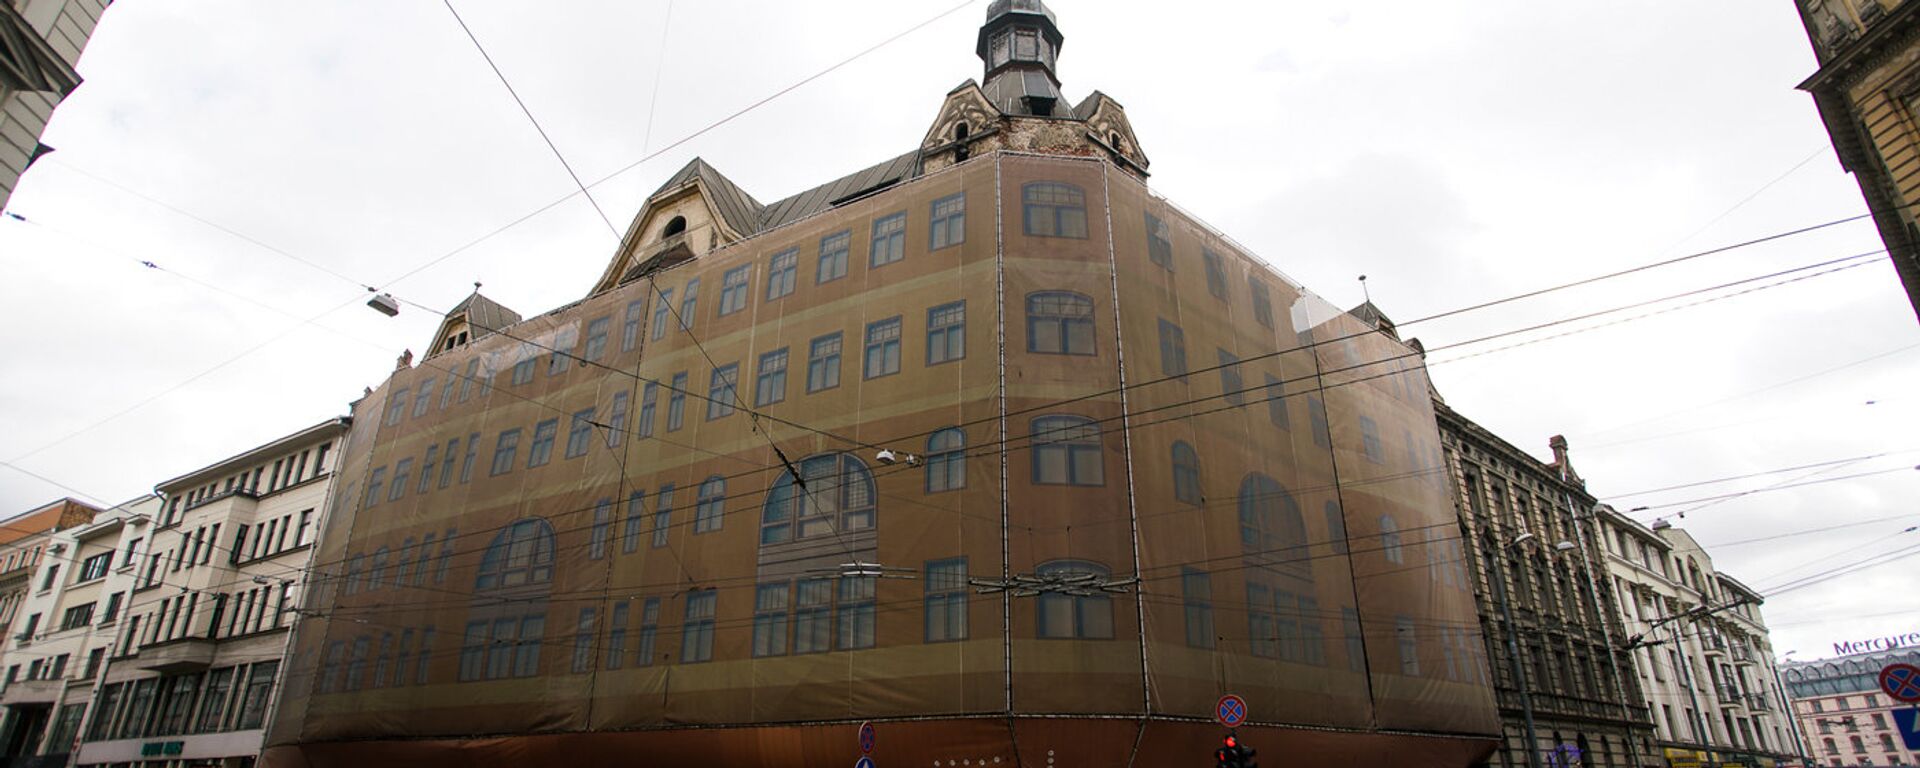 Заброшенный дом на углу улиц Марияс и Элизабетес - Sputnik Латвия, 1920, 14.11.2019